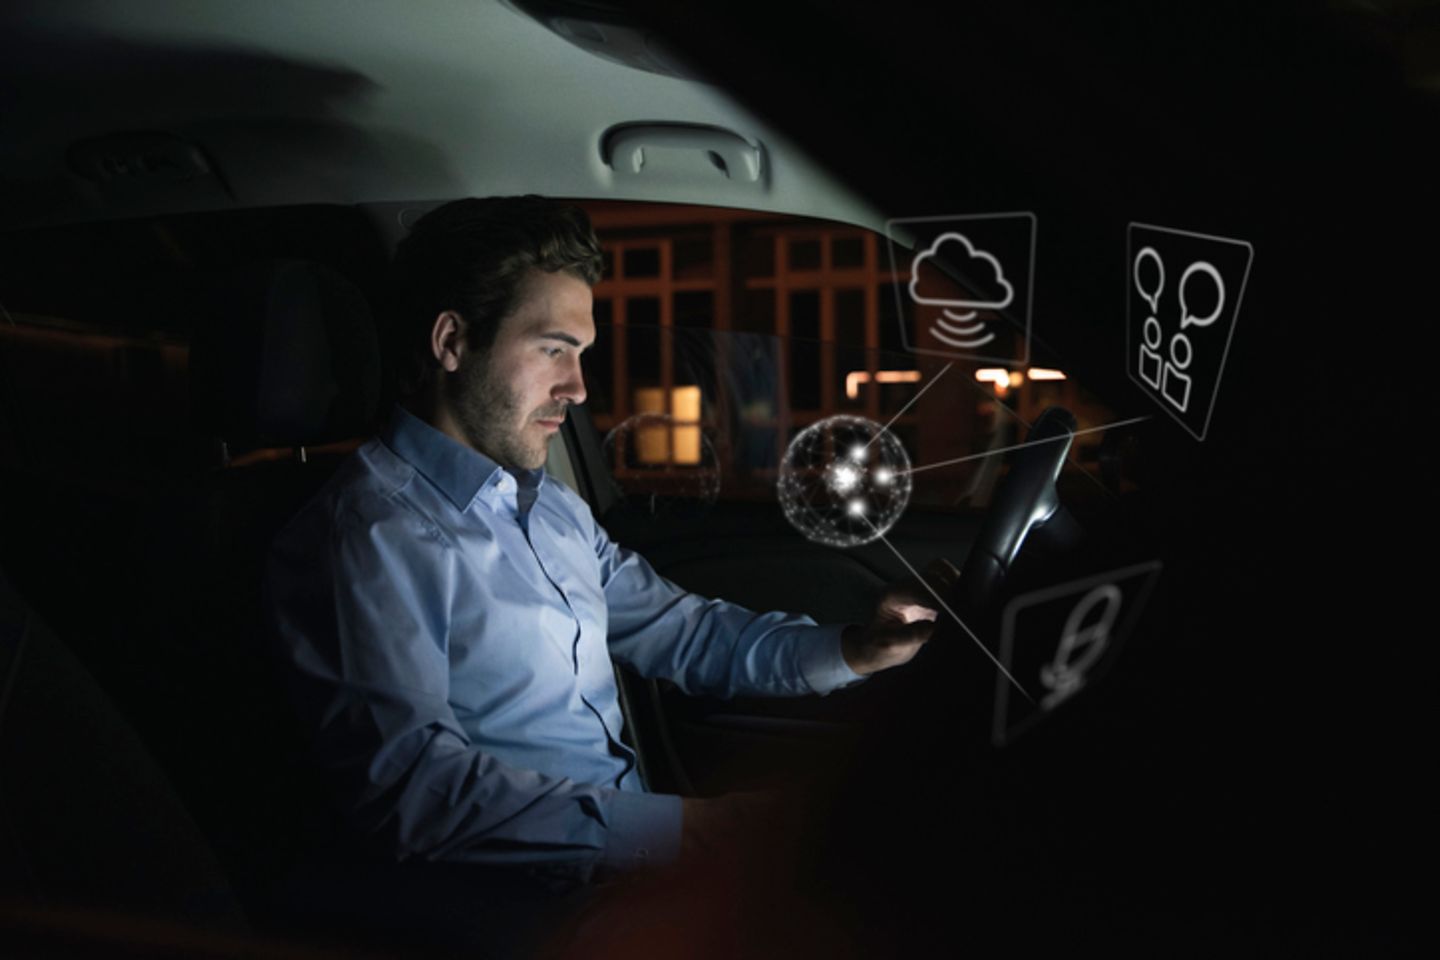 Ein Mann benutzt nachts im Auto ein Gerät, umgeben von Internet-Symbolen